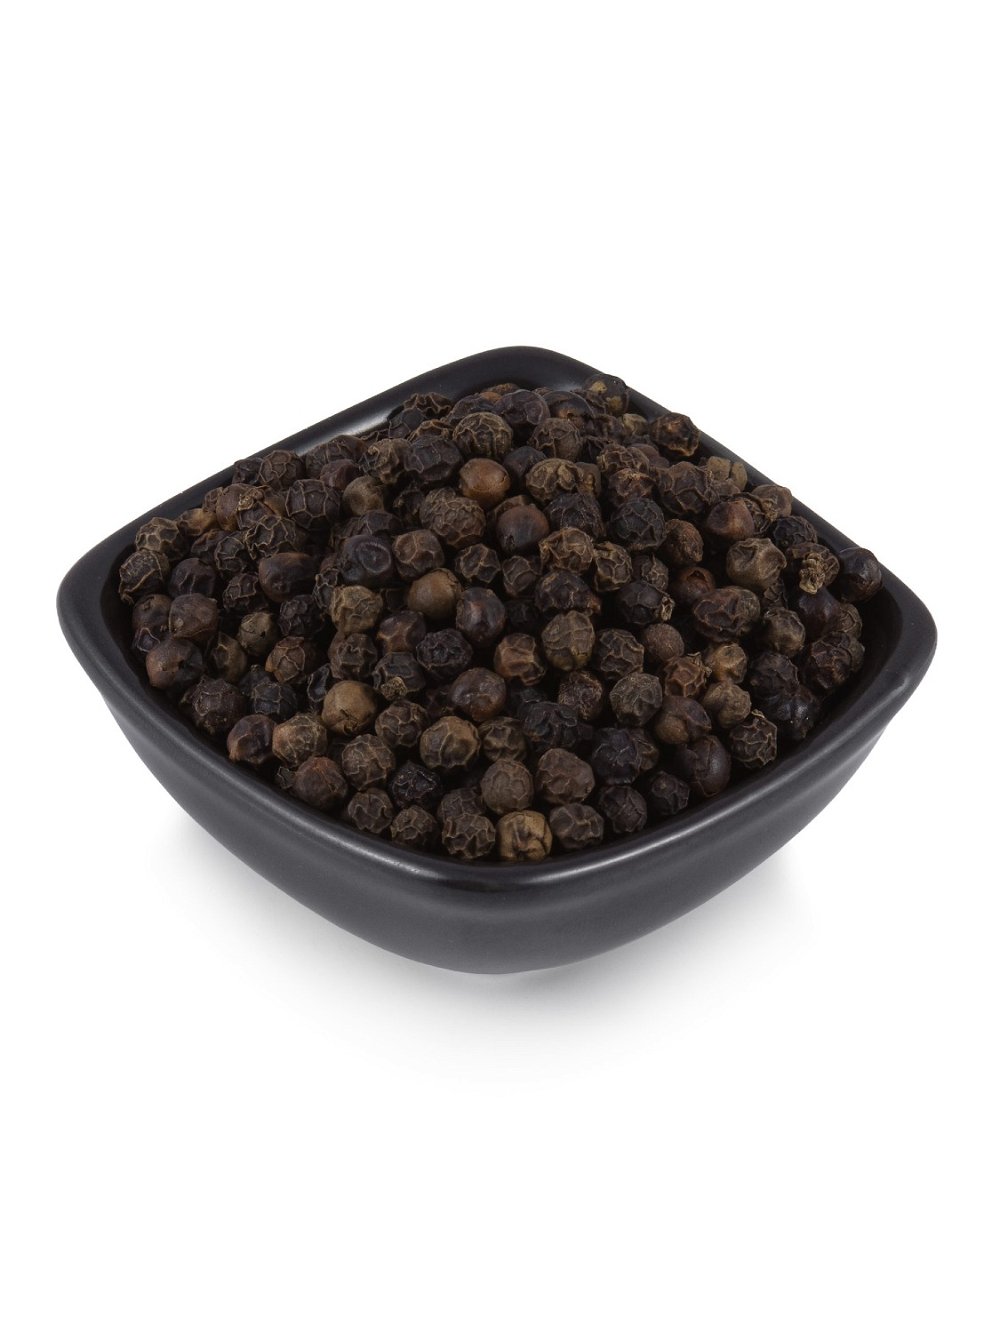 Перец черный горошек Sangam Herbals (90 г), Перец черный горошек 90г